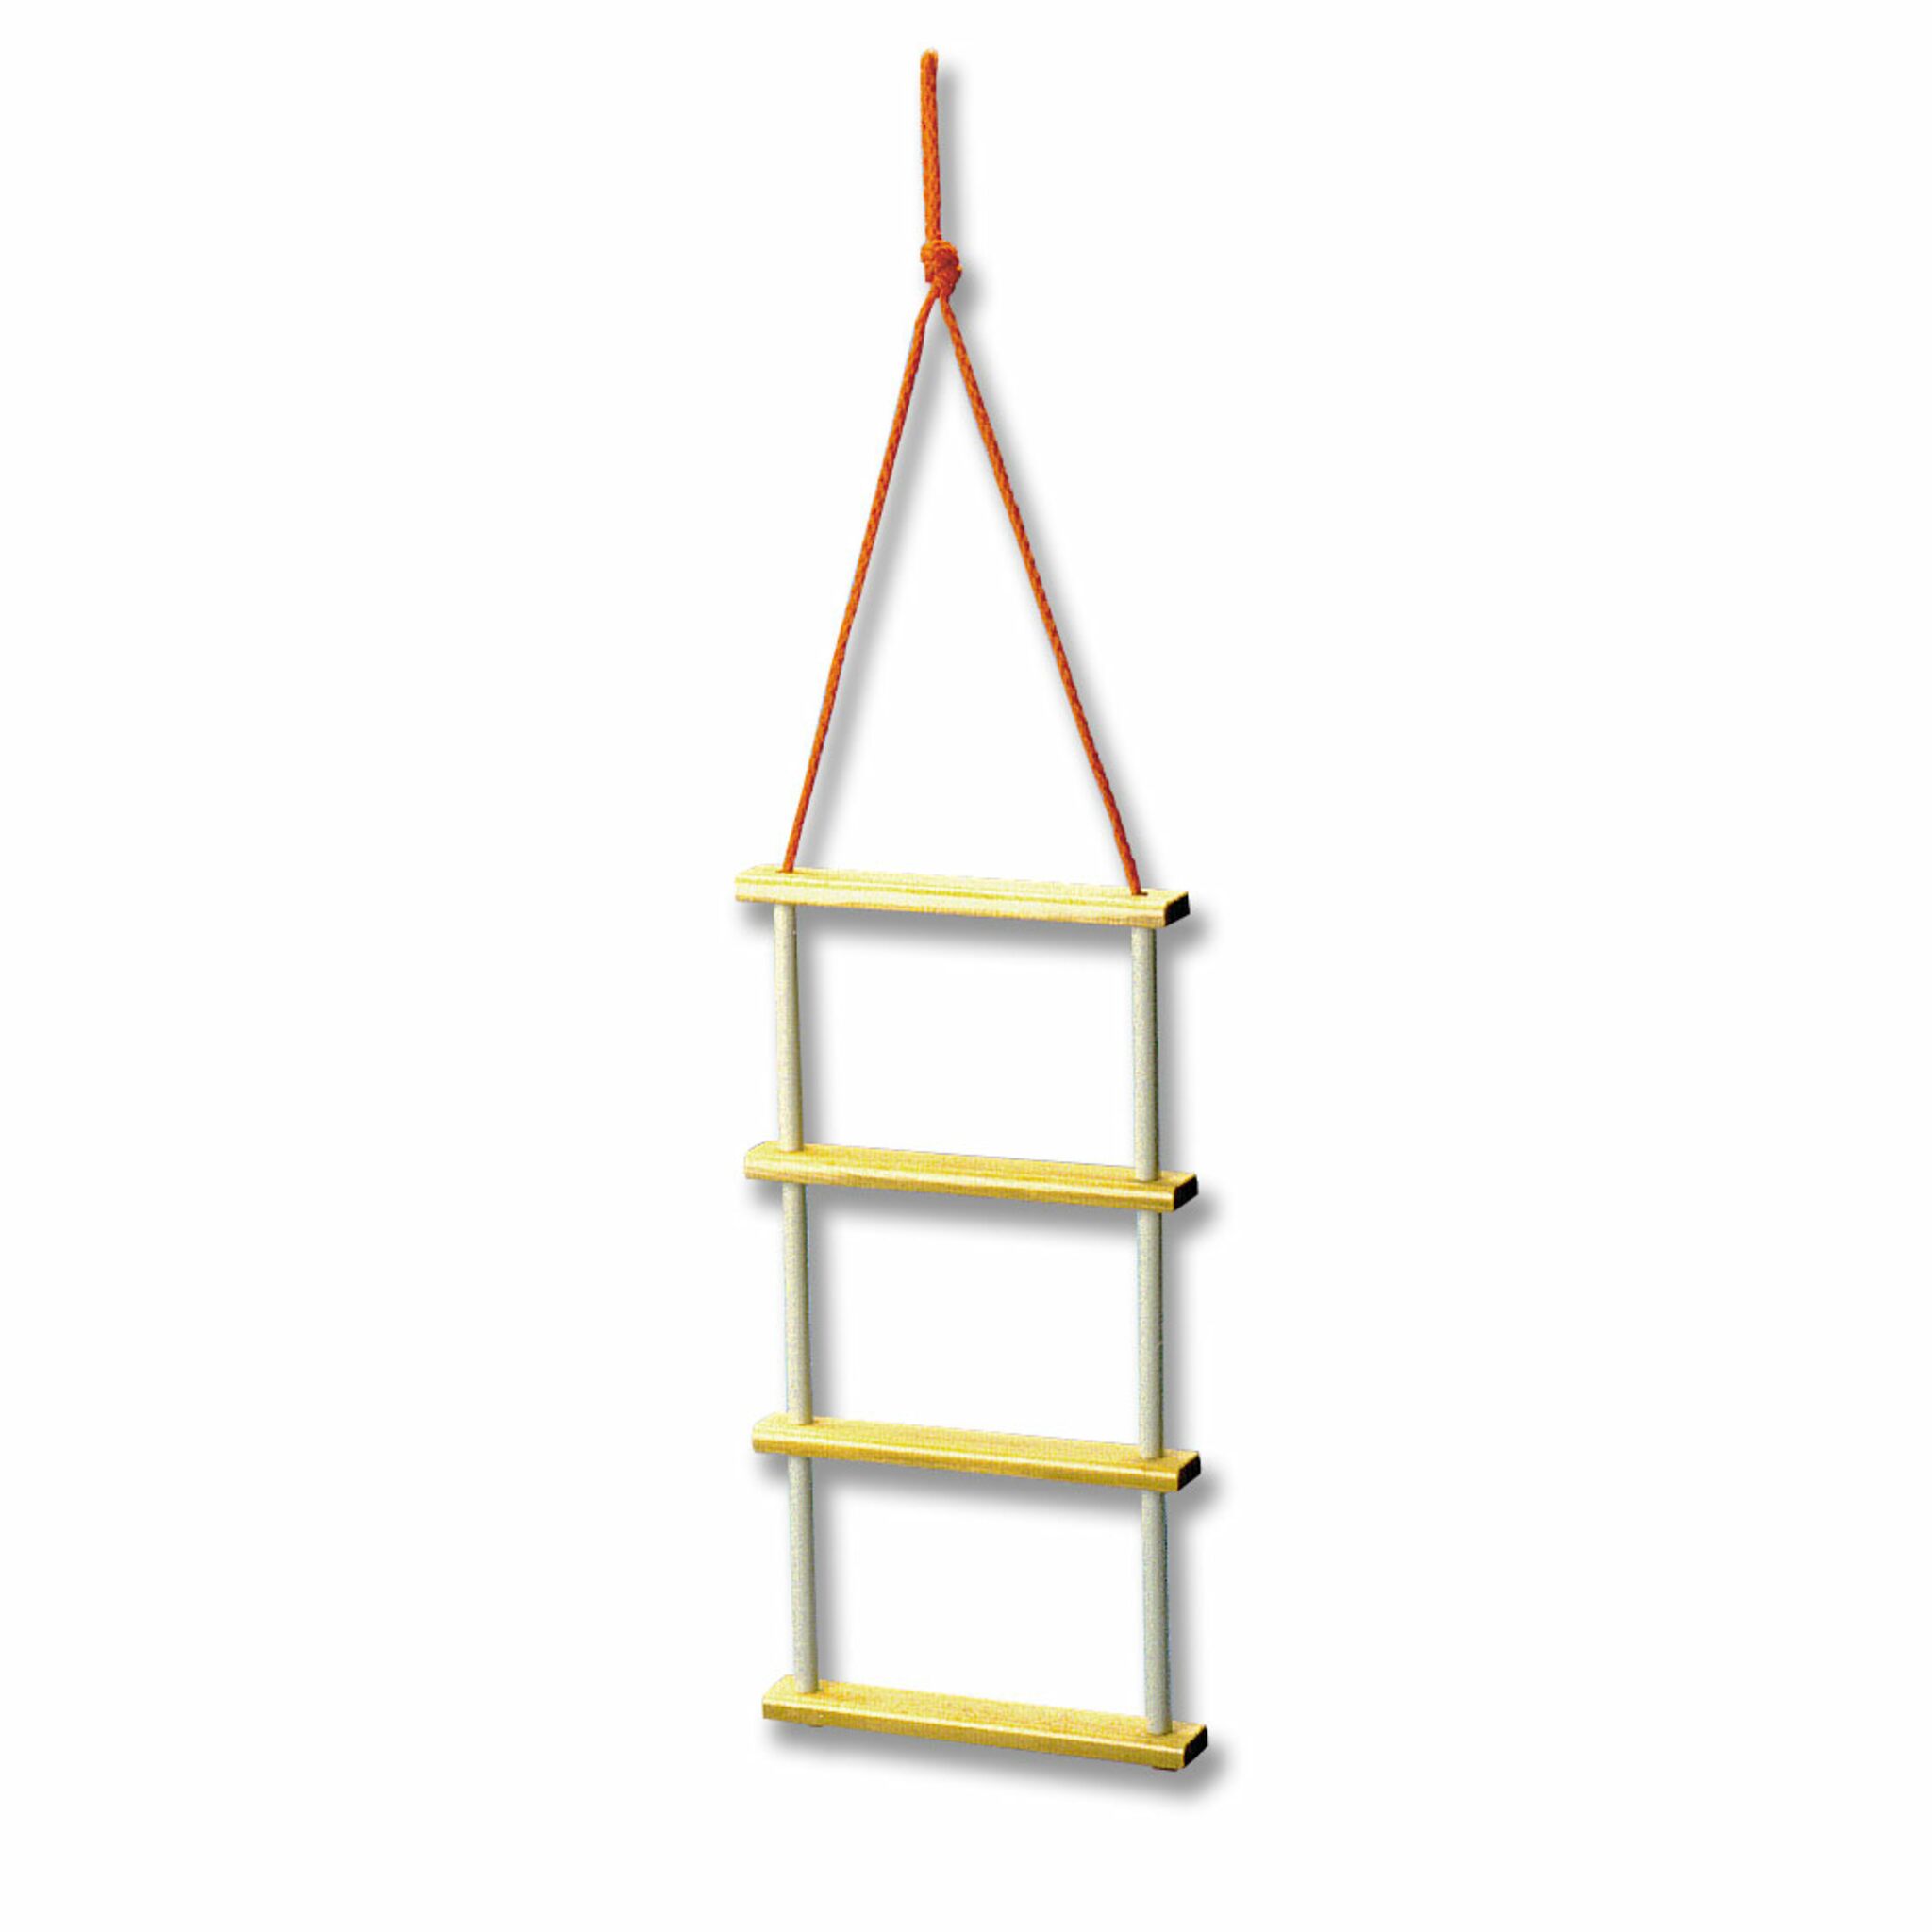 Trem folding ladder, 3 or 4 steps